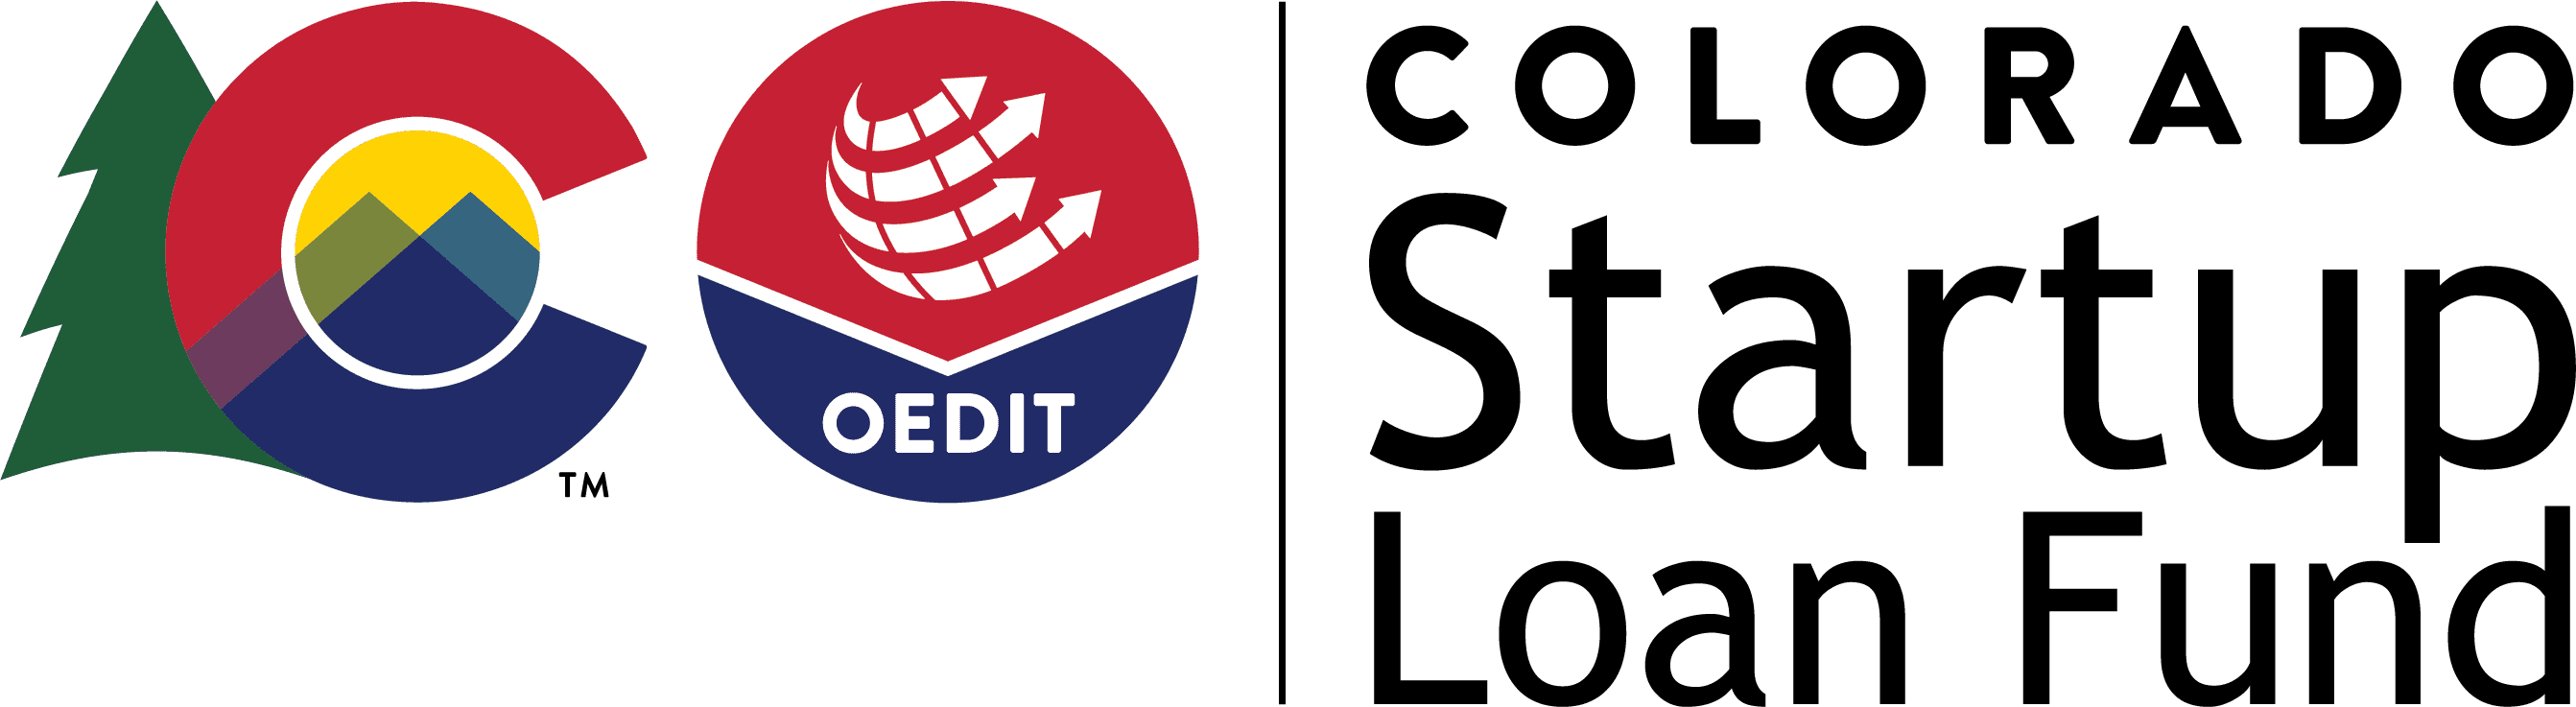 Estado de Colorado OEDIT - Logotipo del Fondo de Préstamos para Empresas de Colorado